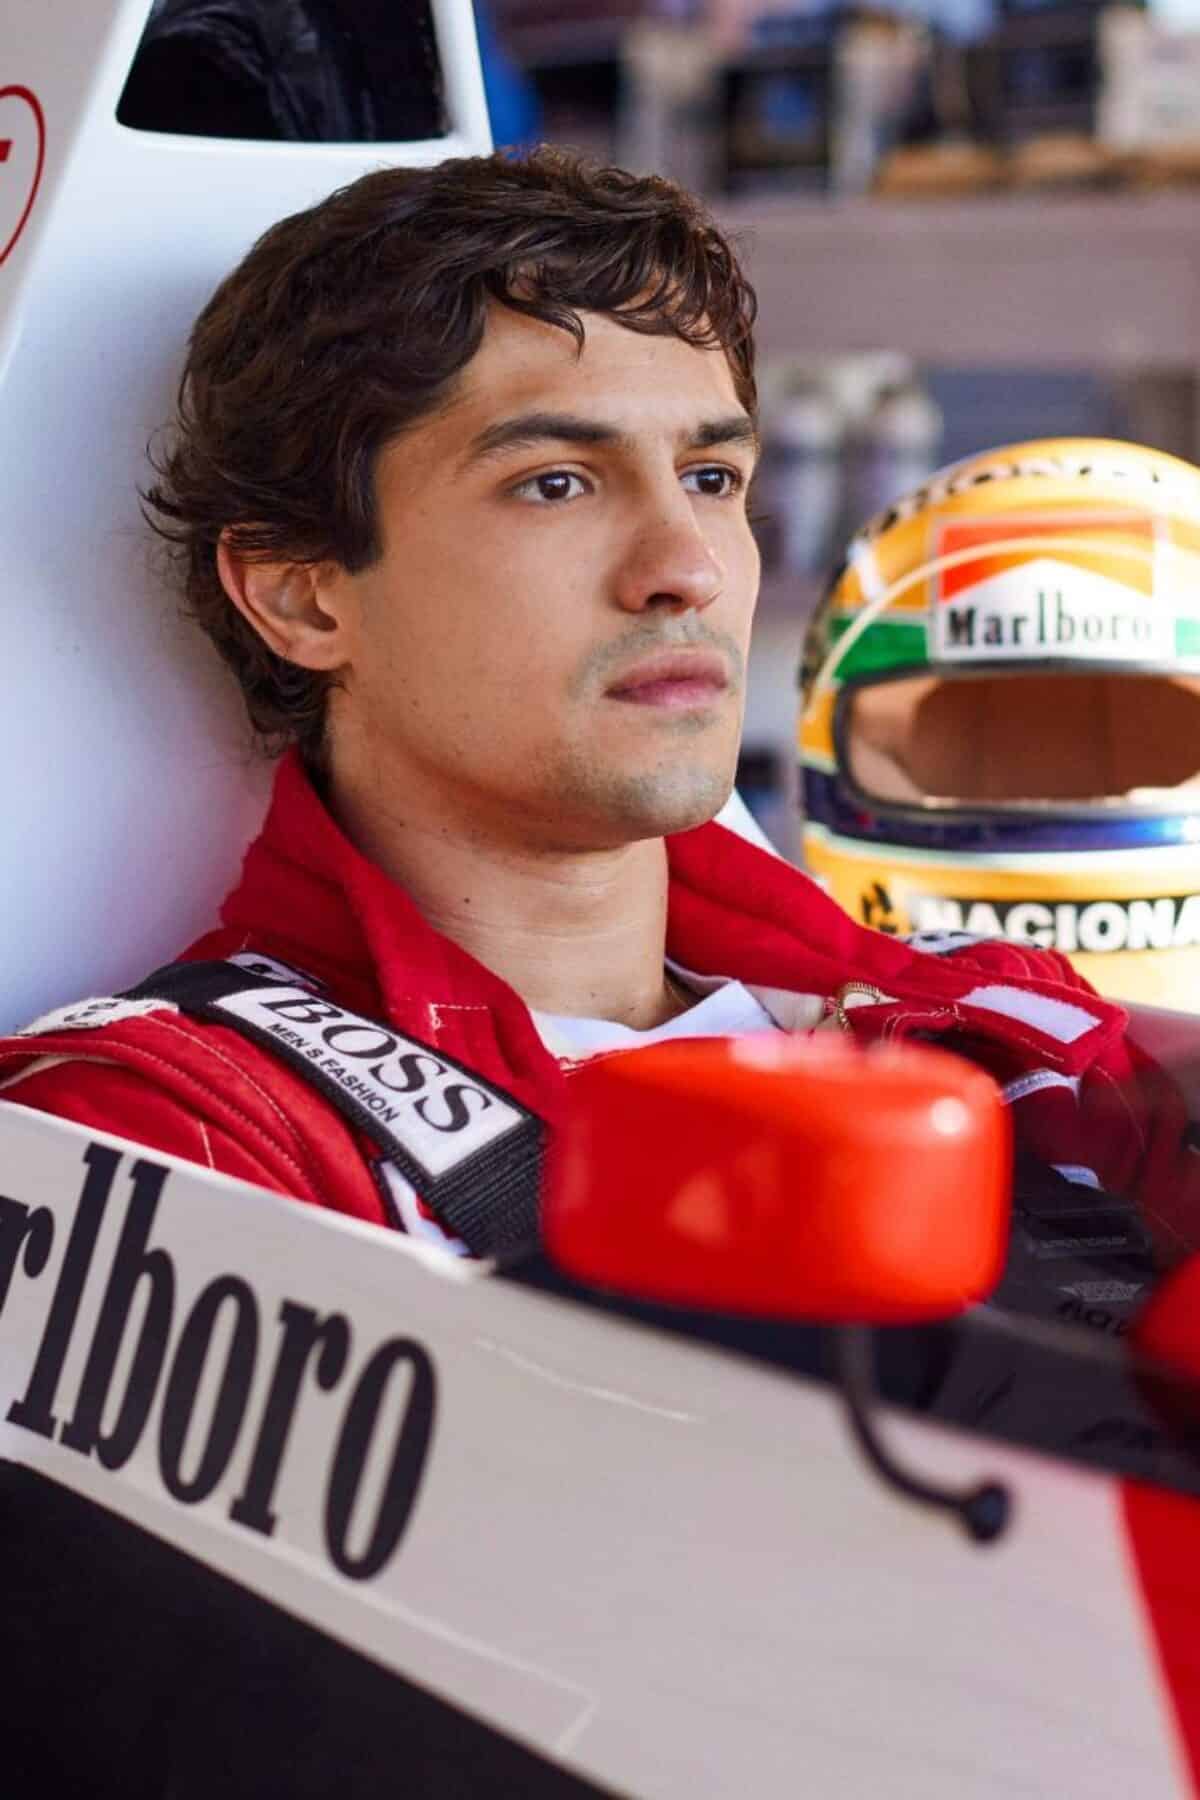 Gabriel Leone as Ayrton Senna